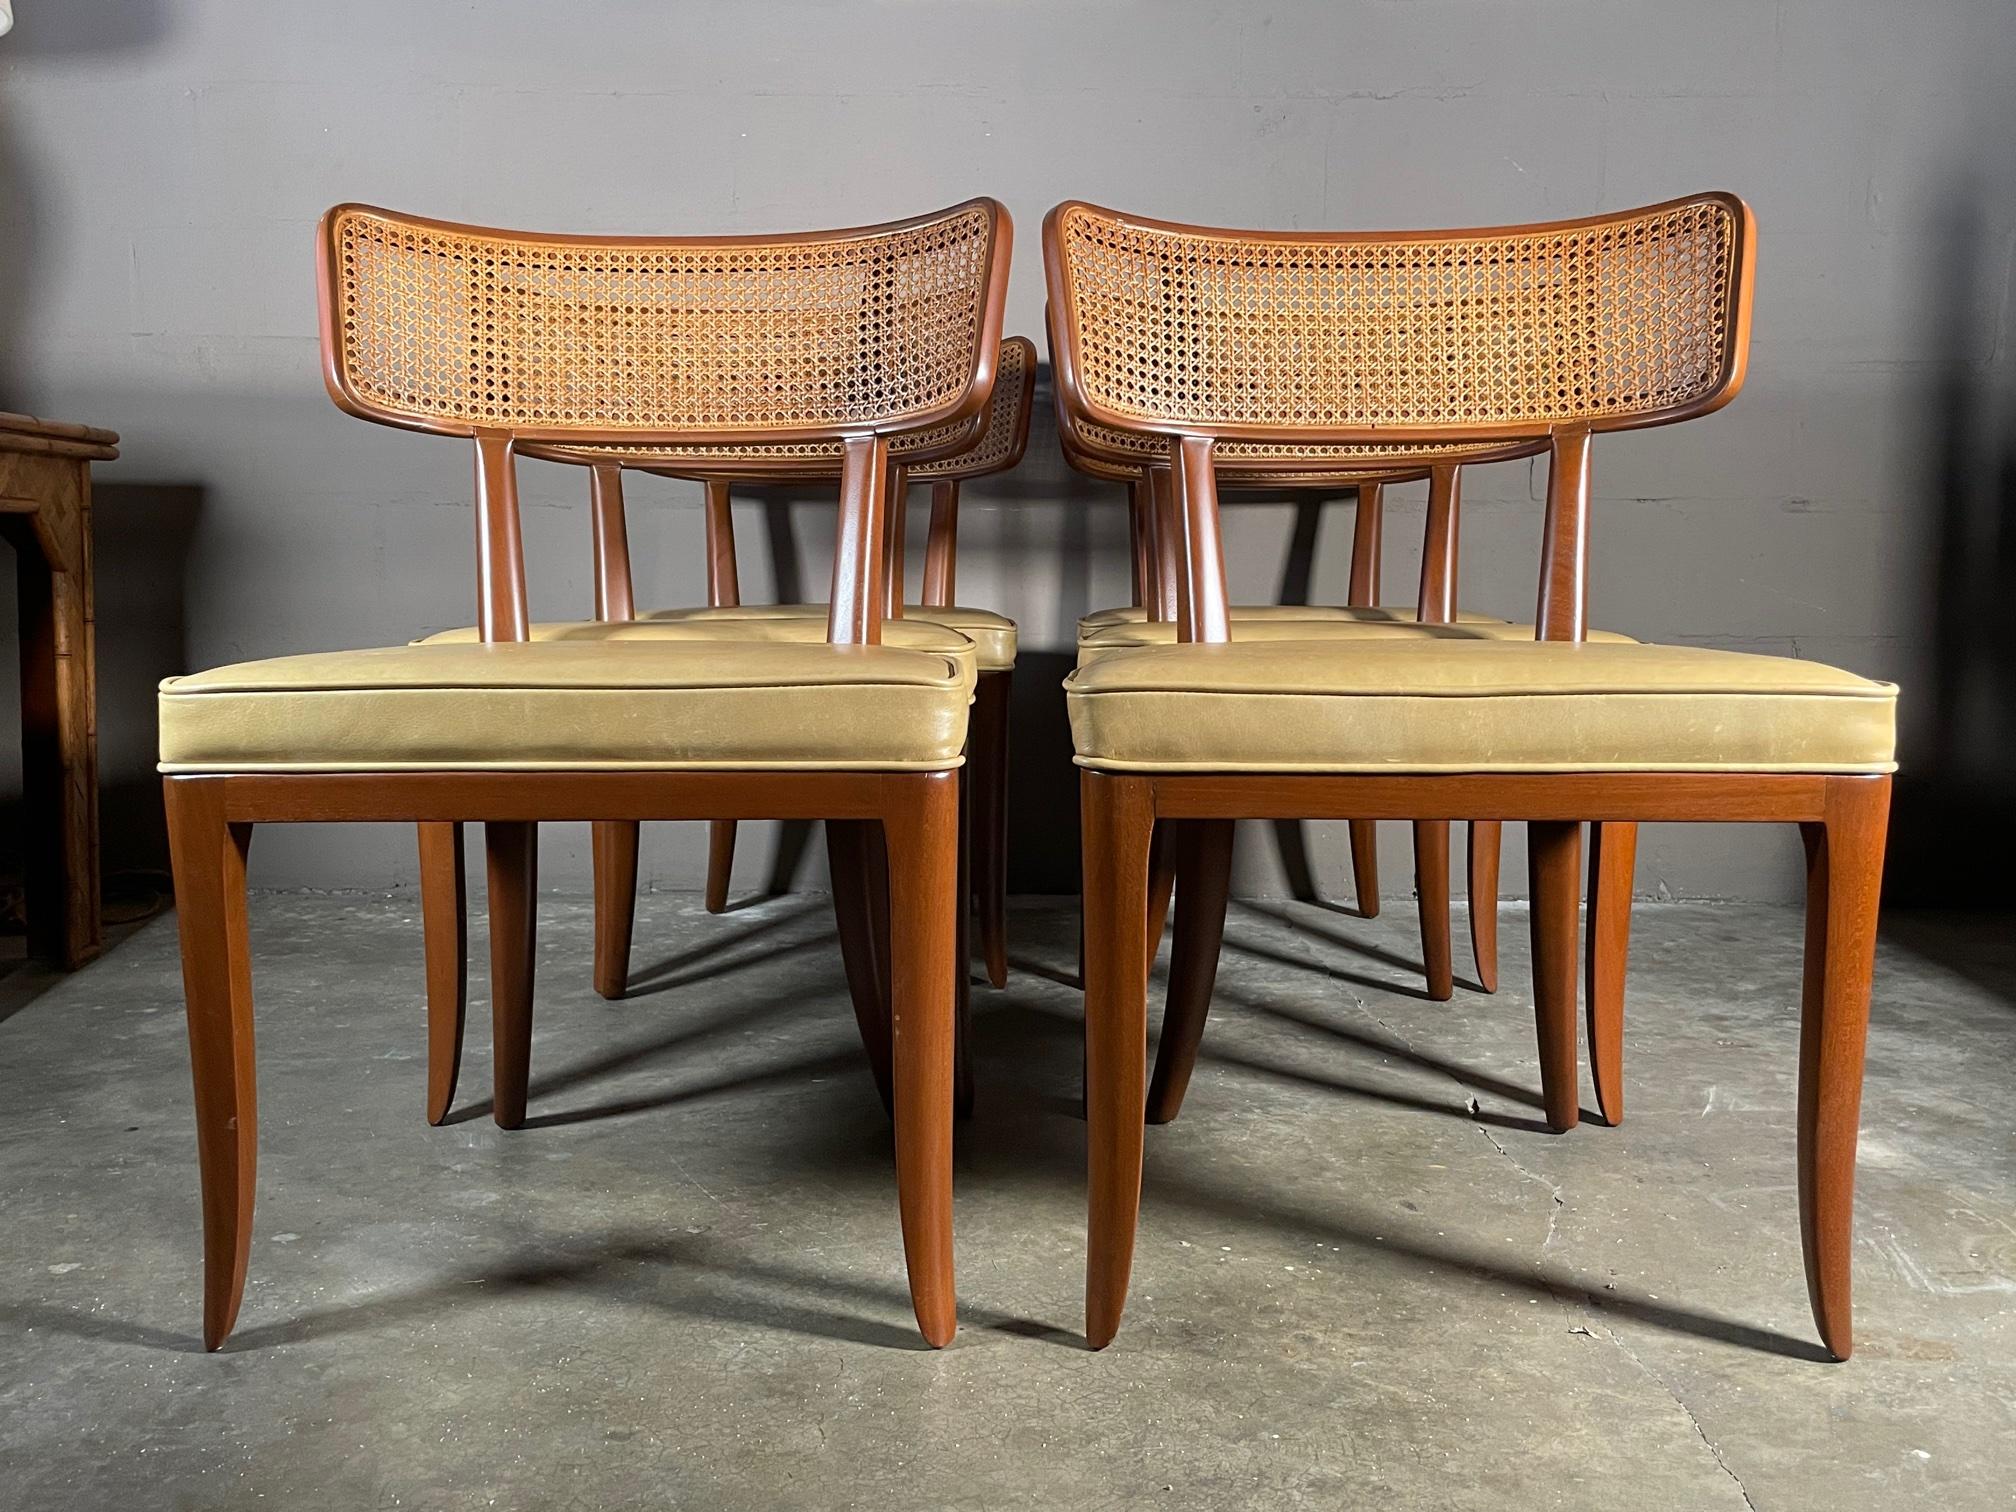 Un ensemble classique de huit (8) chaises de salle à manger Dunbar conçues par Edward Wormley et fabriquées par Dunbar vers les années 1950. De grande taille avec des sièges généreux, des pieds de style klismos et des dossiers cannelés, ces chaises